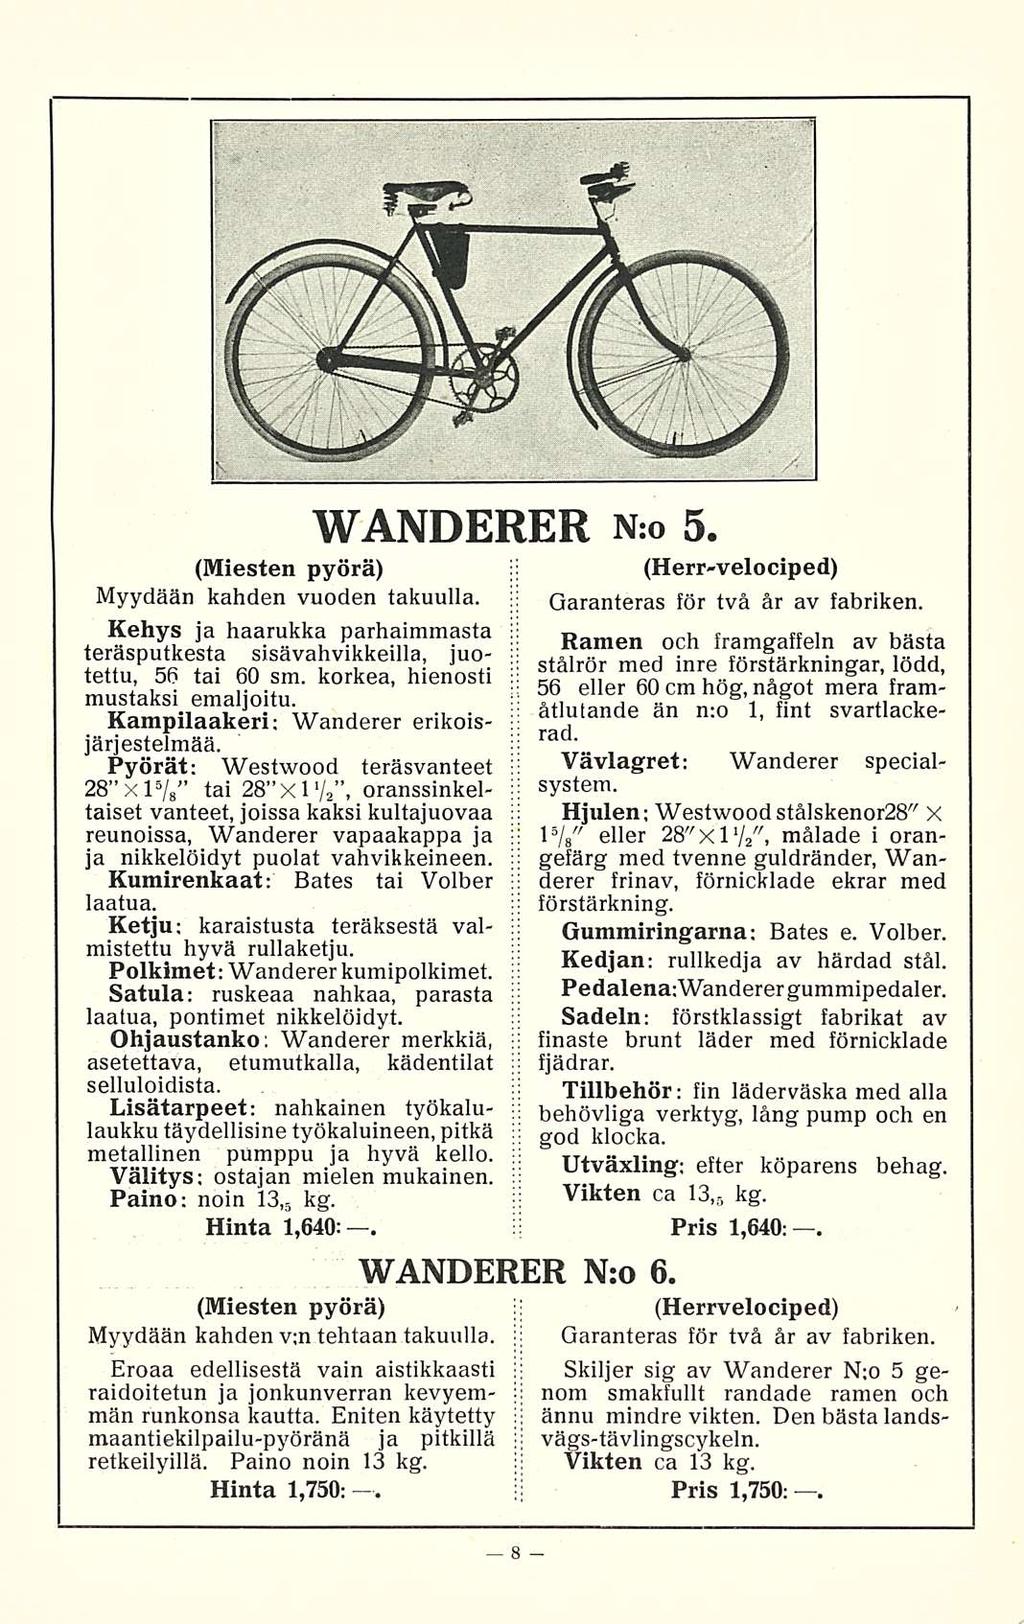 WANDERER N:o 5. (Miesten pyörä) Myydään kahden vuoden takuulla. Kehys ja haarukka parhaimmasta teräsputkesta sisävahvikkeilla, juotettu, 56 tai 60 sm. korkea, hienosti mustaksi emaljoitu.